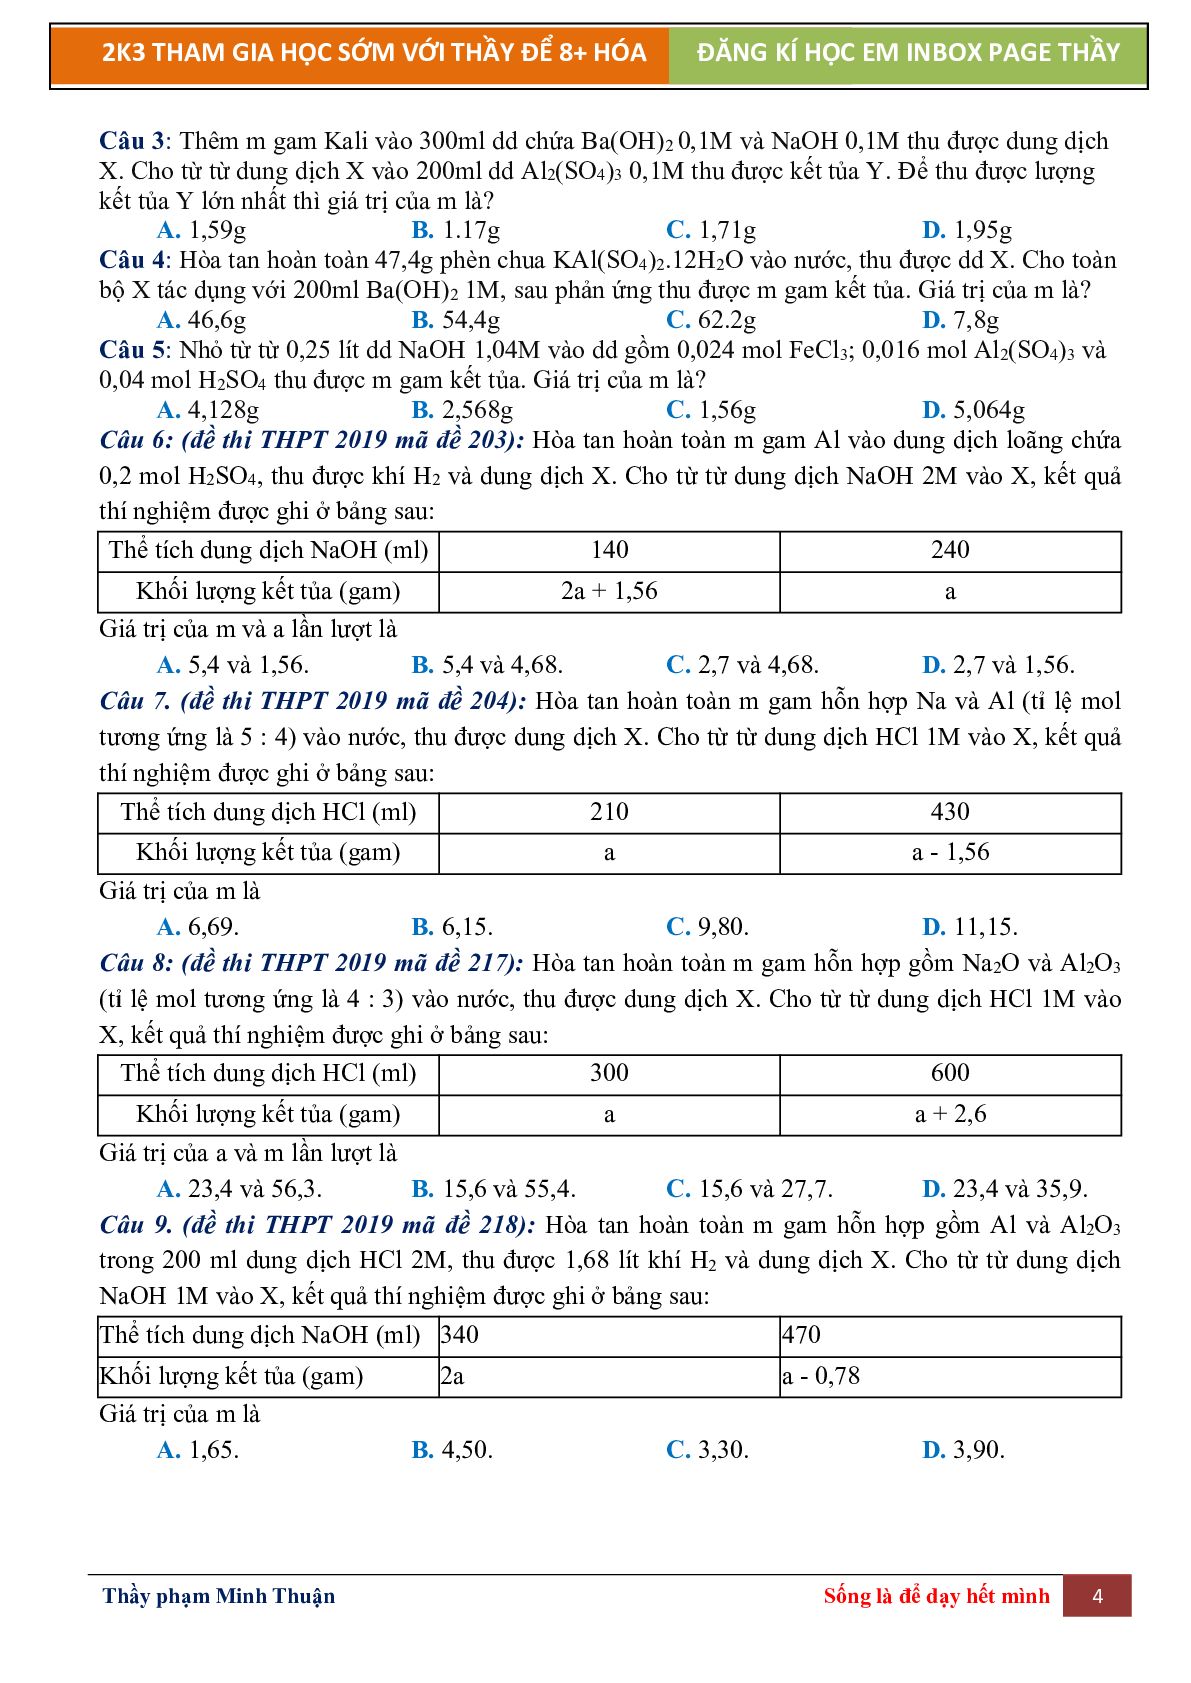 Lý Thuyết Chương 6 Nhôm Môn Hóa Học Lớp 12 (trang 4)